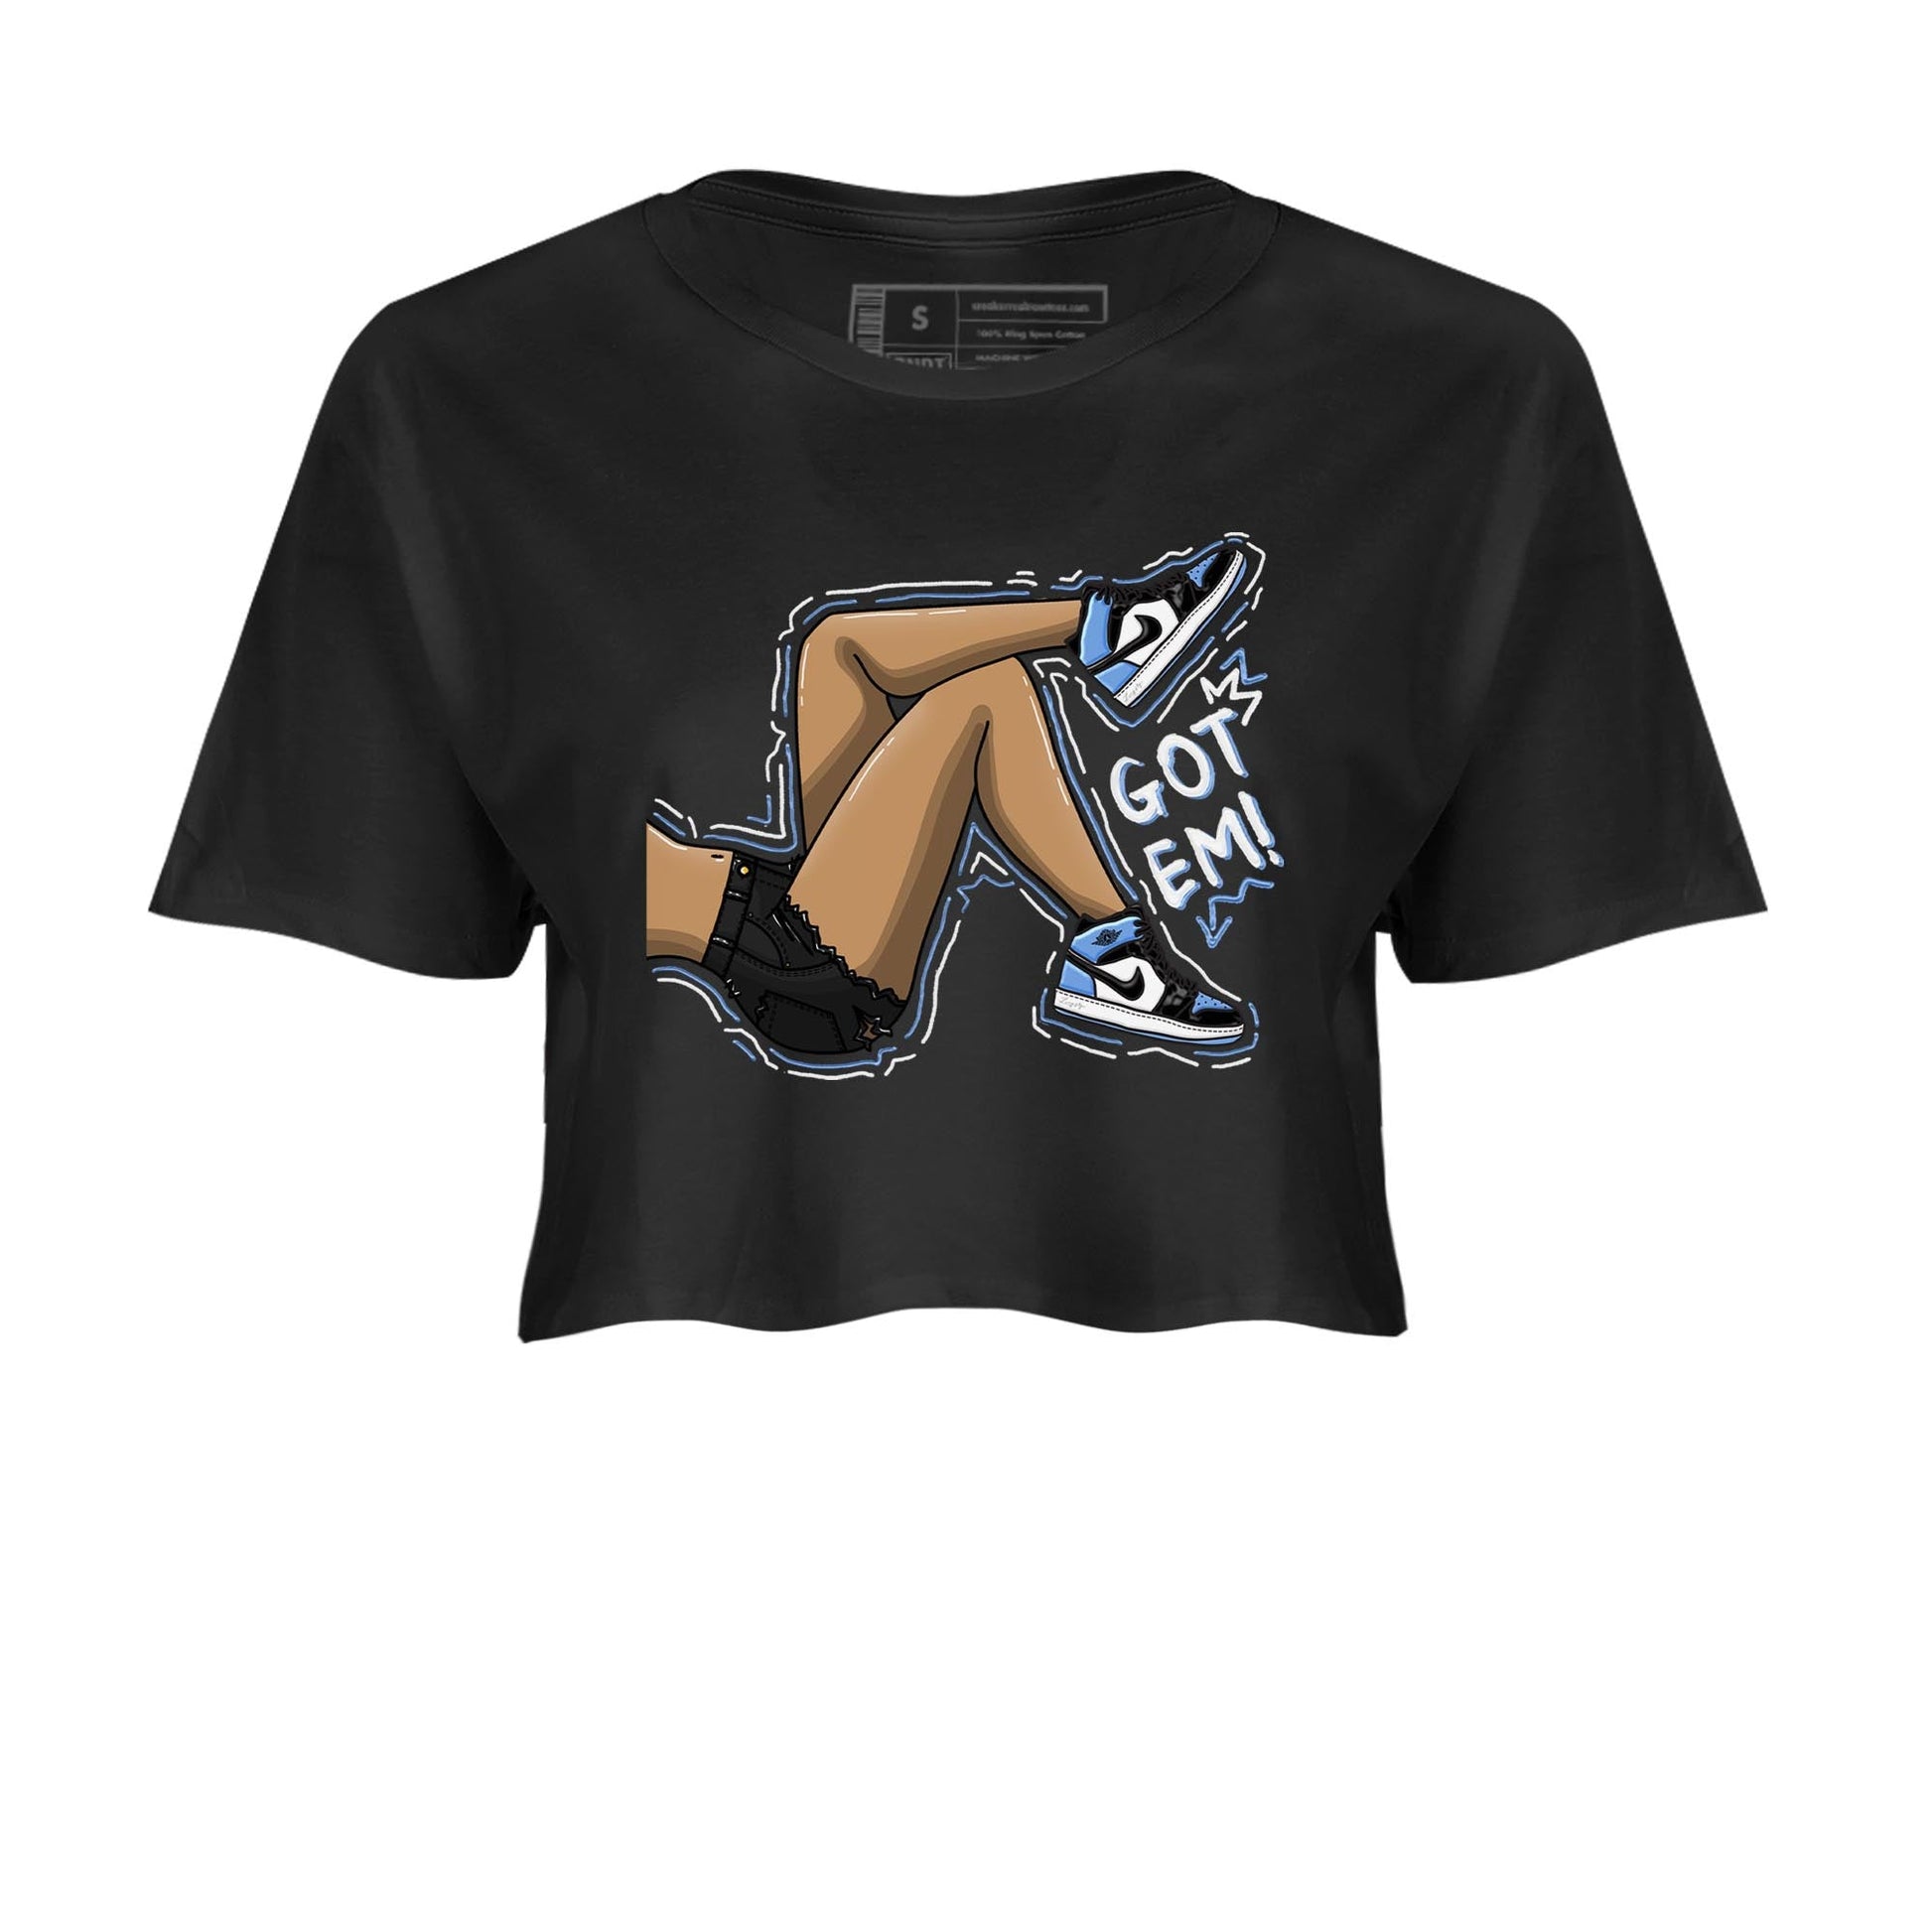 Air Jordan 1 Retro High OG University Blue shirt to match jordans Got Em Legs Streetwear Sneaker Shirt Air Jordan 1 UNC Toe Drip Gear Zone Sneaker Matching Clothing Black 2 Crop T-Shirt